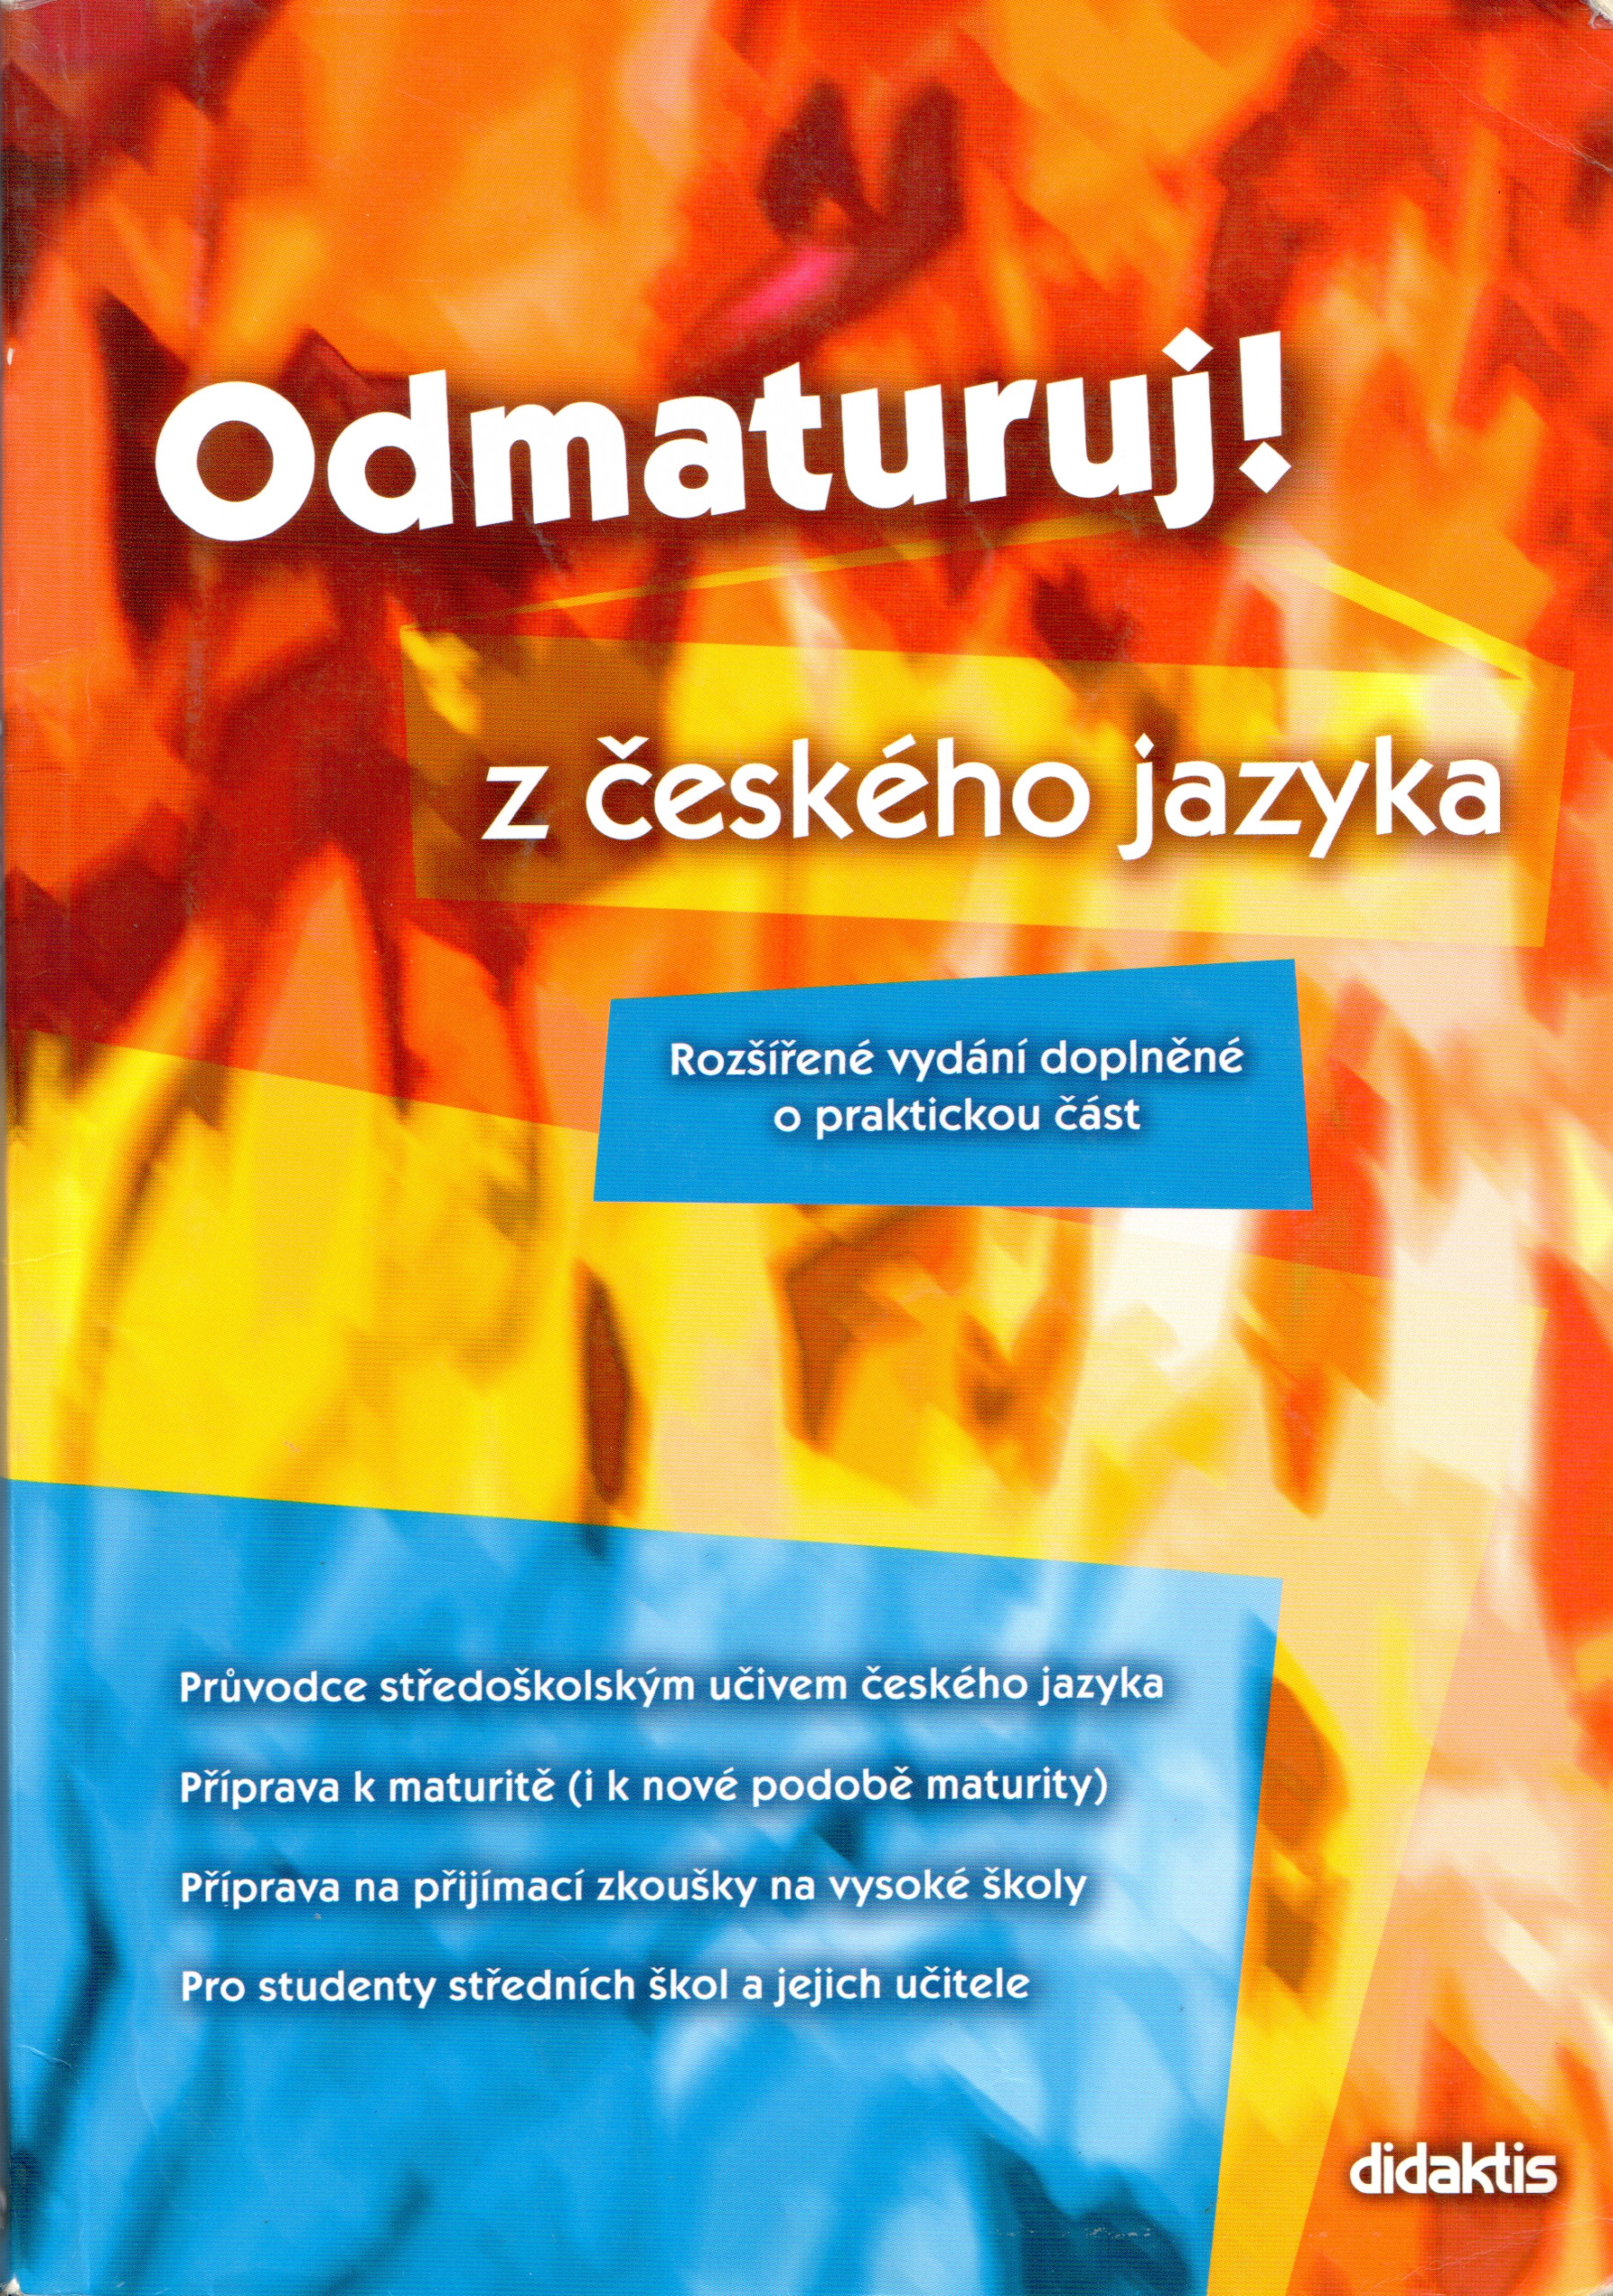 Odmaturuj! z českého jazyka (rozšířené vydání) - Náhled učebnice